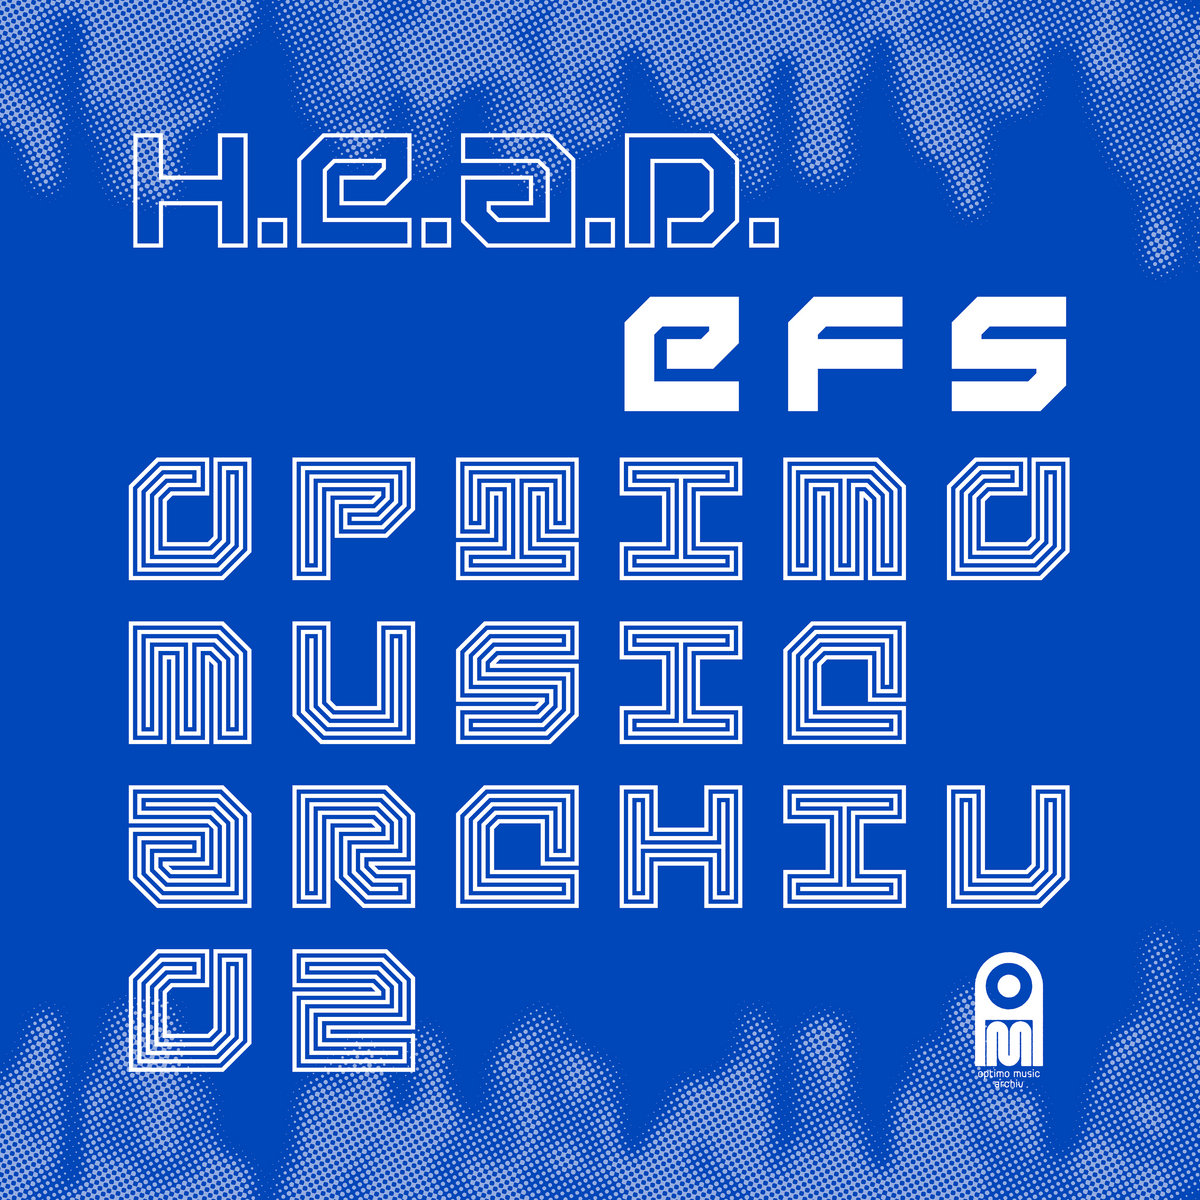 H.E.A.D. ‎– EFS